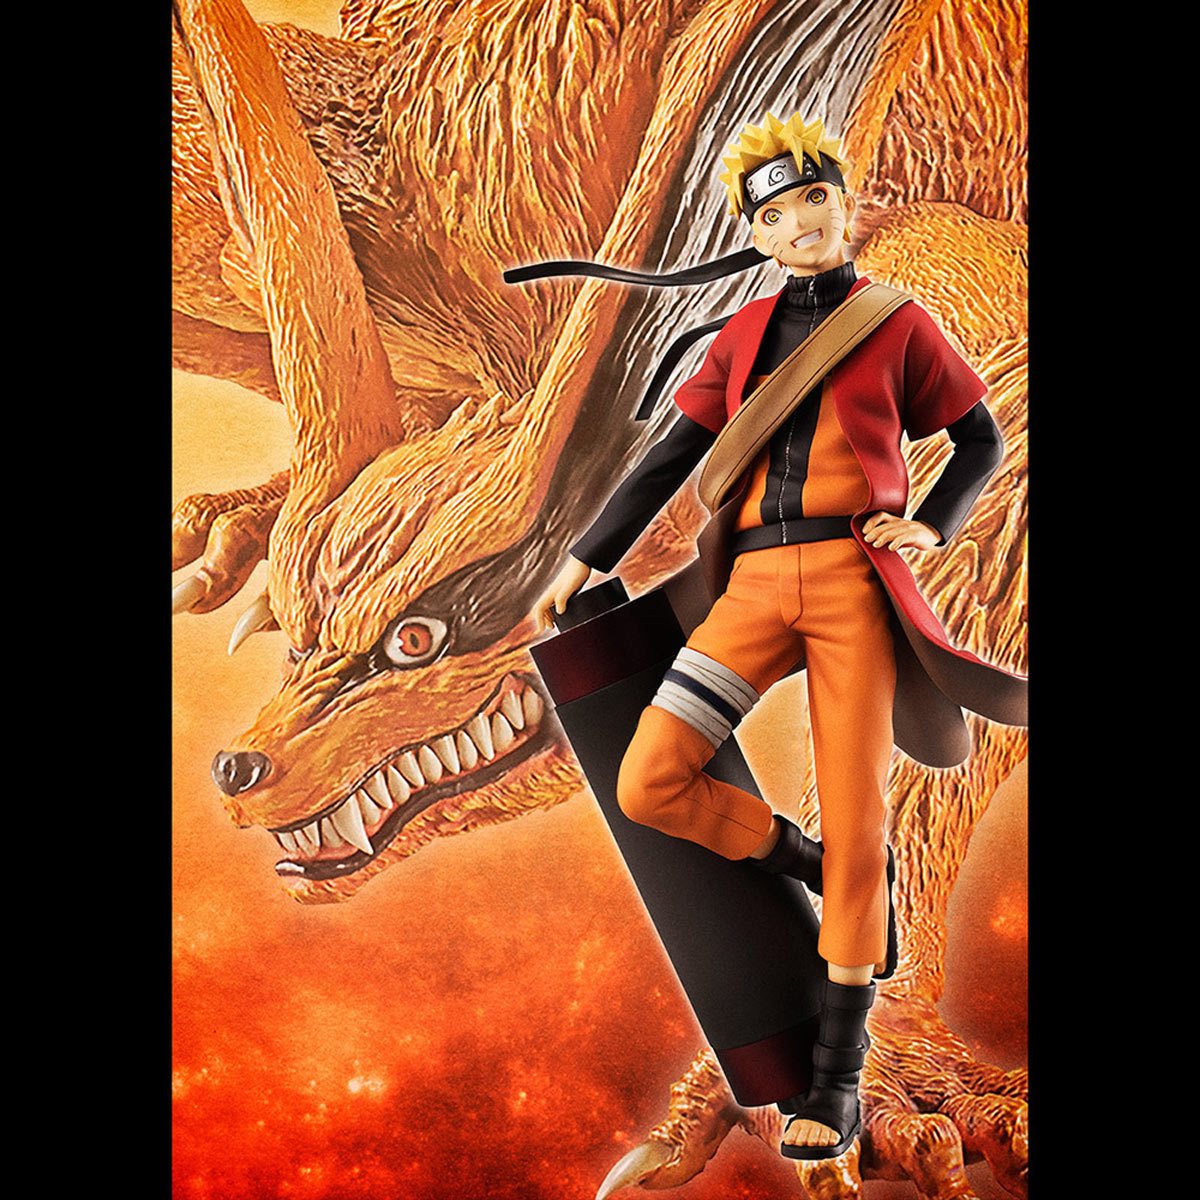 MegaHouse Naruto G.E.M. Series Naruto Uzumaki Shinobi World War Version Action  Figure Orange - US